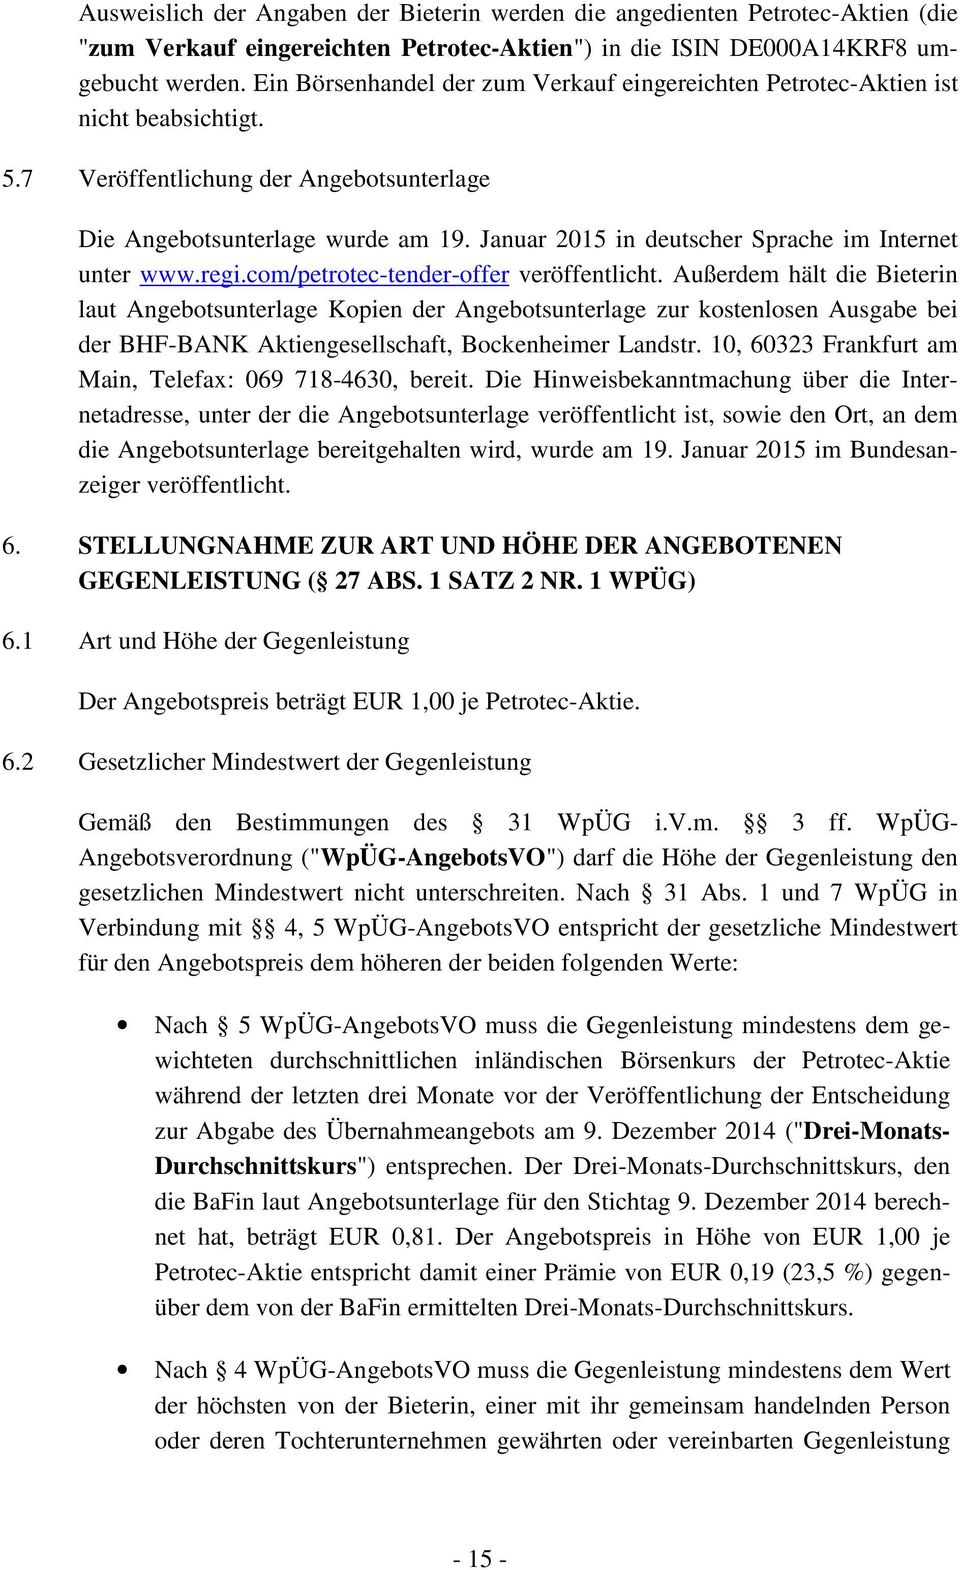 Januar 2015 in deutscher Sprache im Internet unter www.regi.com/petrotec-tender-offer veröffentlicht.